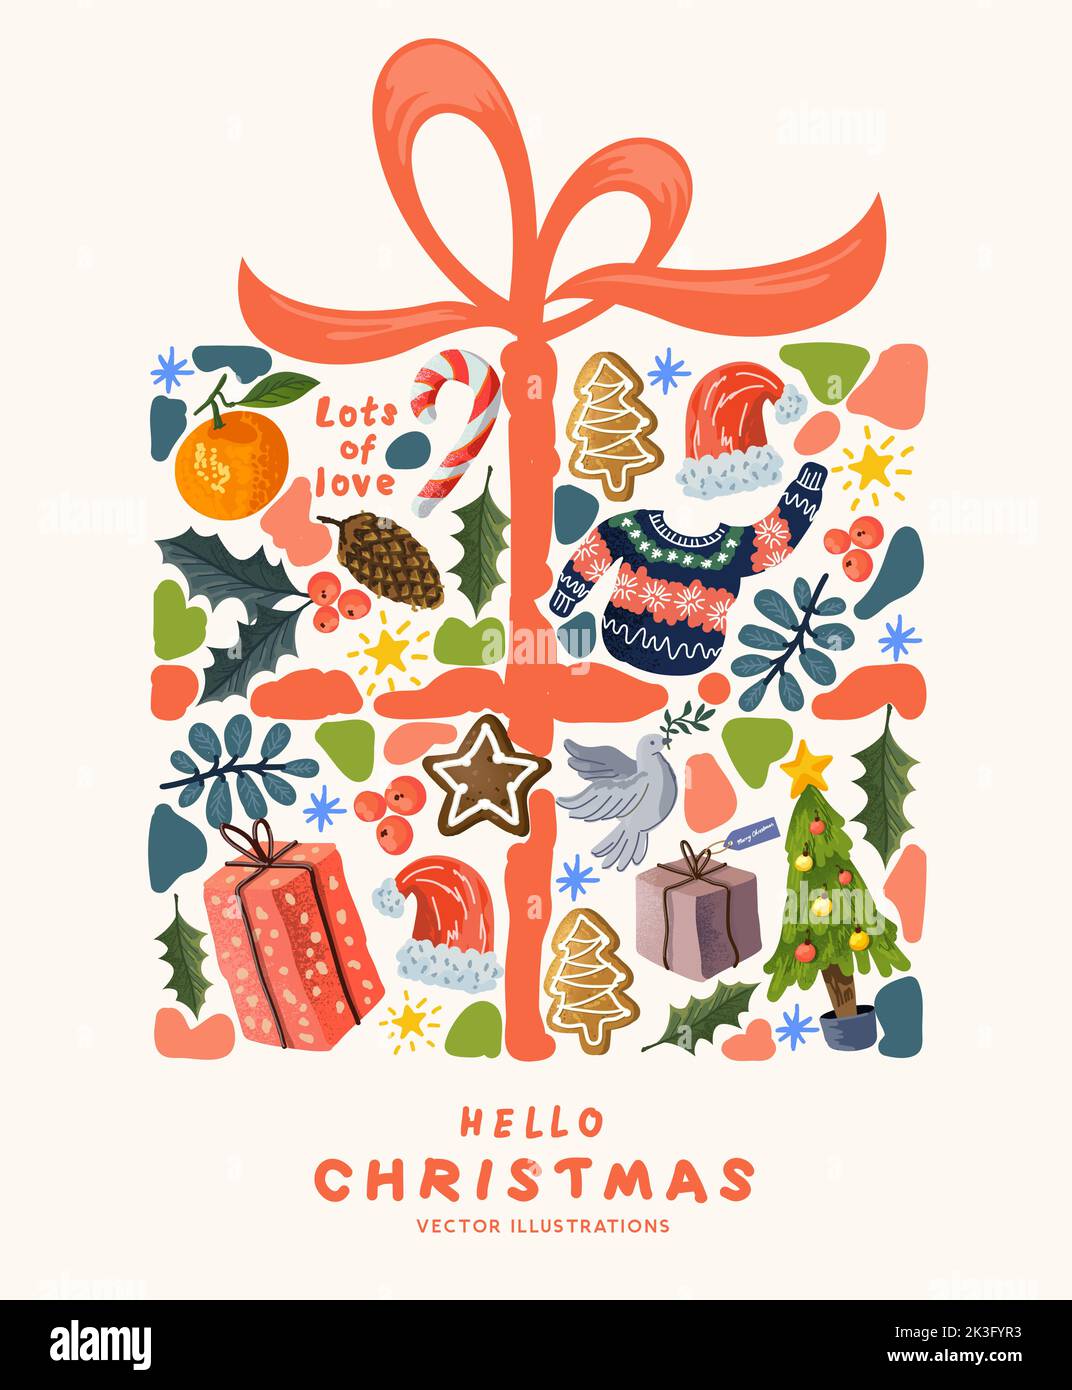 Regalo de Navidad envuelto en diseños decorativos hechos a mano que incluyen plantas, luces y delicias festivas. Ilustración vectorial. Ilustración del Vector